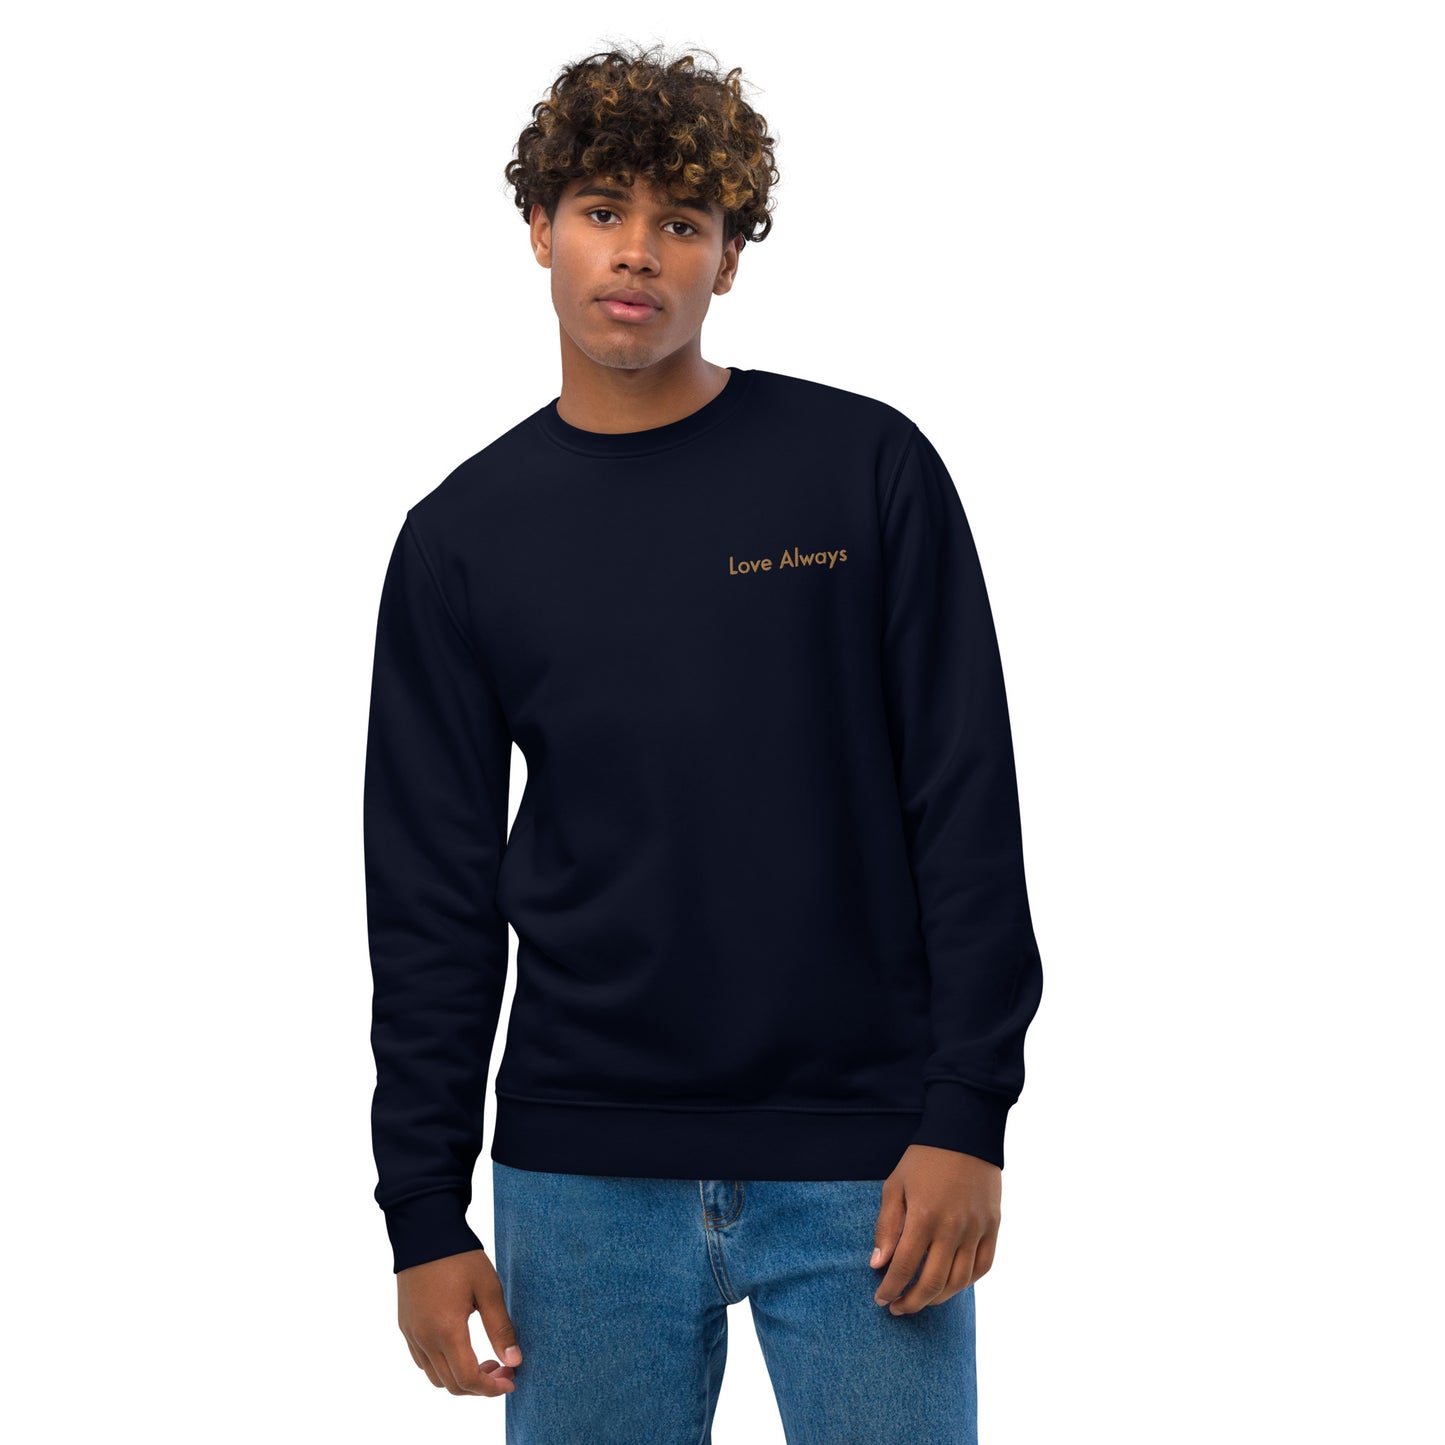 Love Always Men's Organic Cotton Sweatshirt